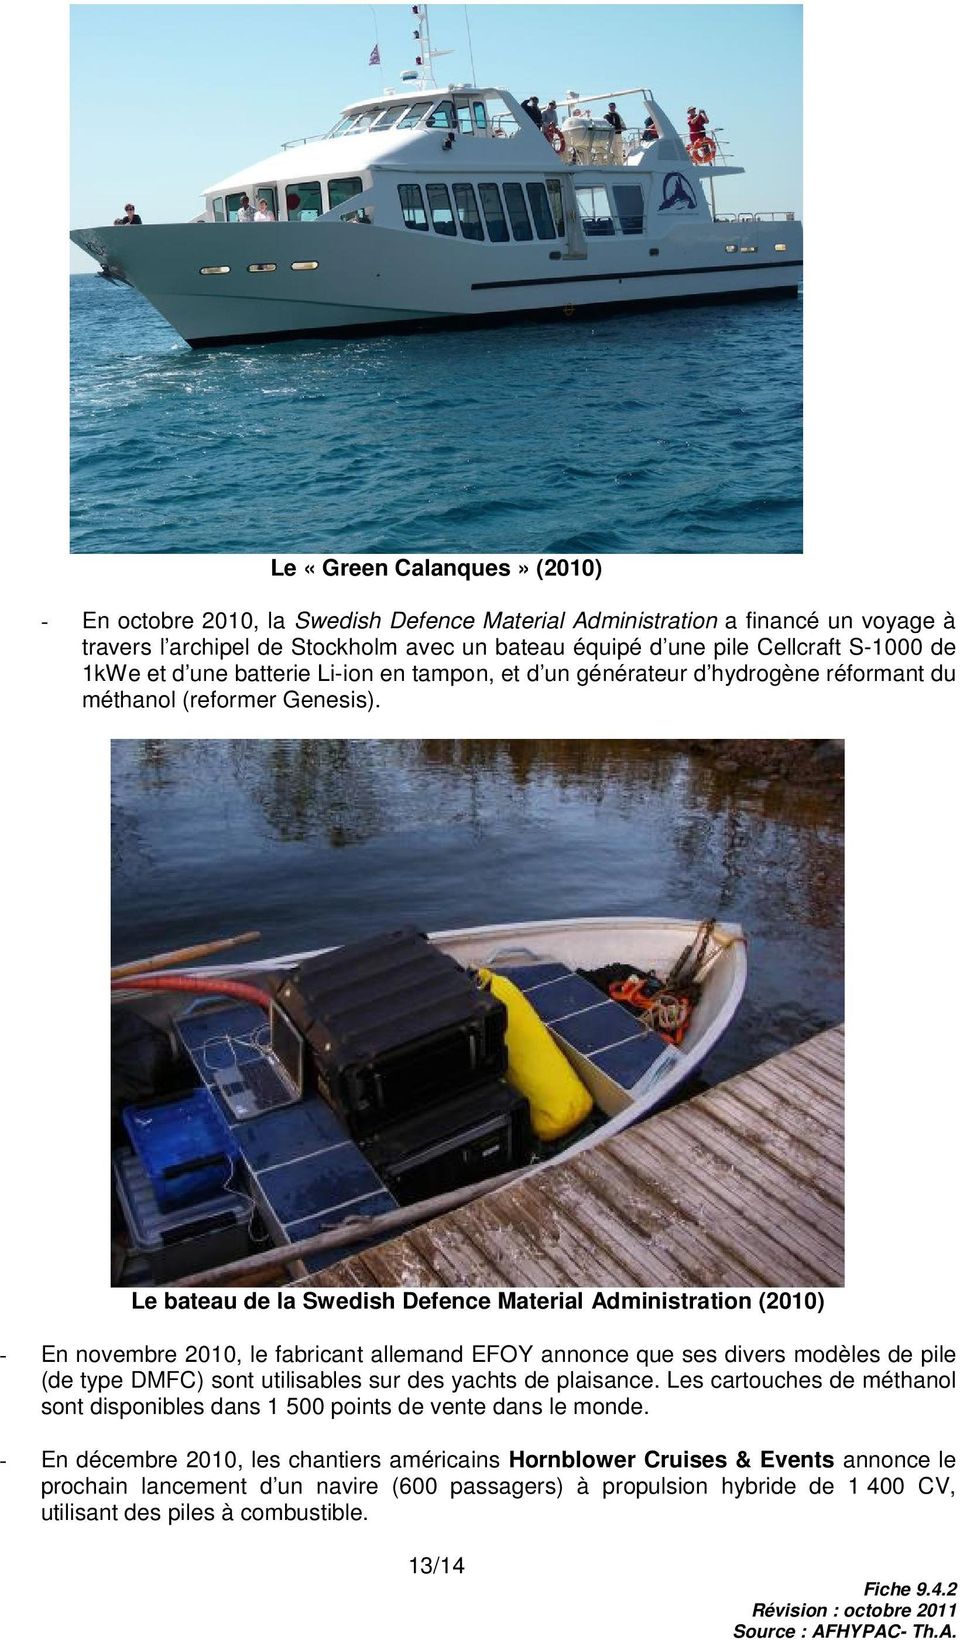 Le bateau de la Swedish Defence Material Administration (2010) - En novembre 2010, le fabricant allemand EFOY annonce que ses divers modèles de pile (de type DMFC) sont utilisables sur des yachts de